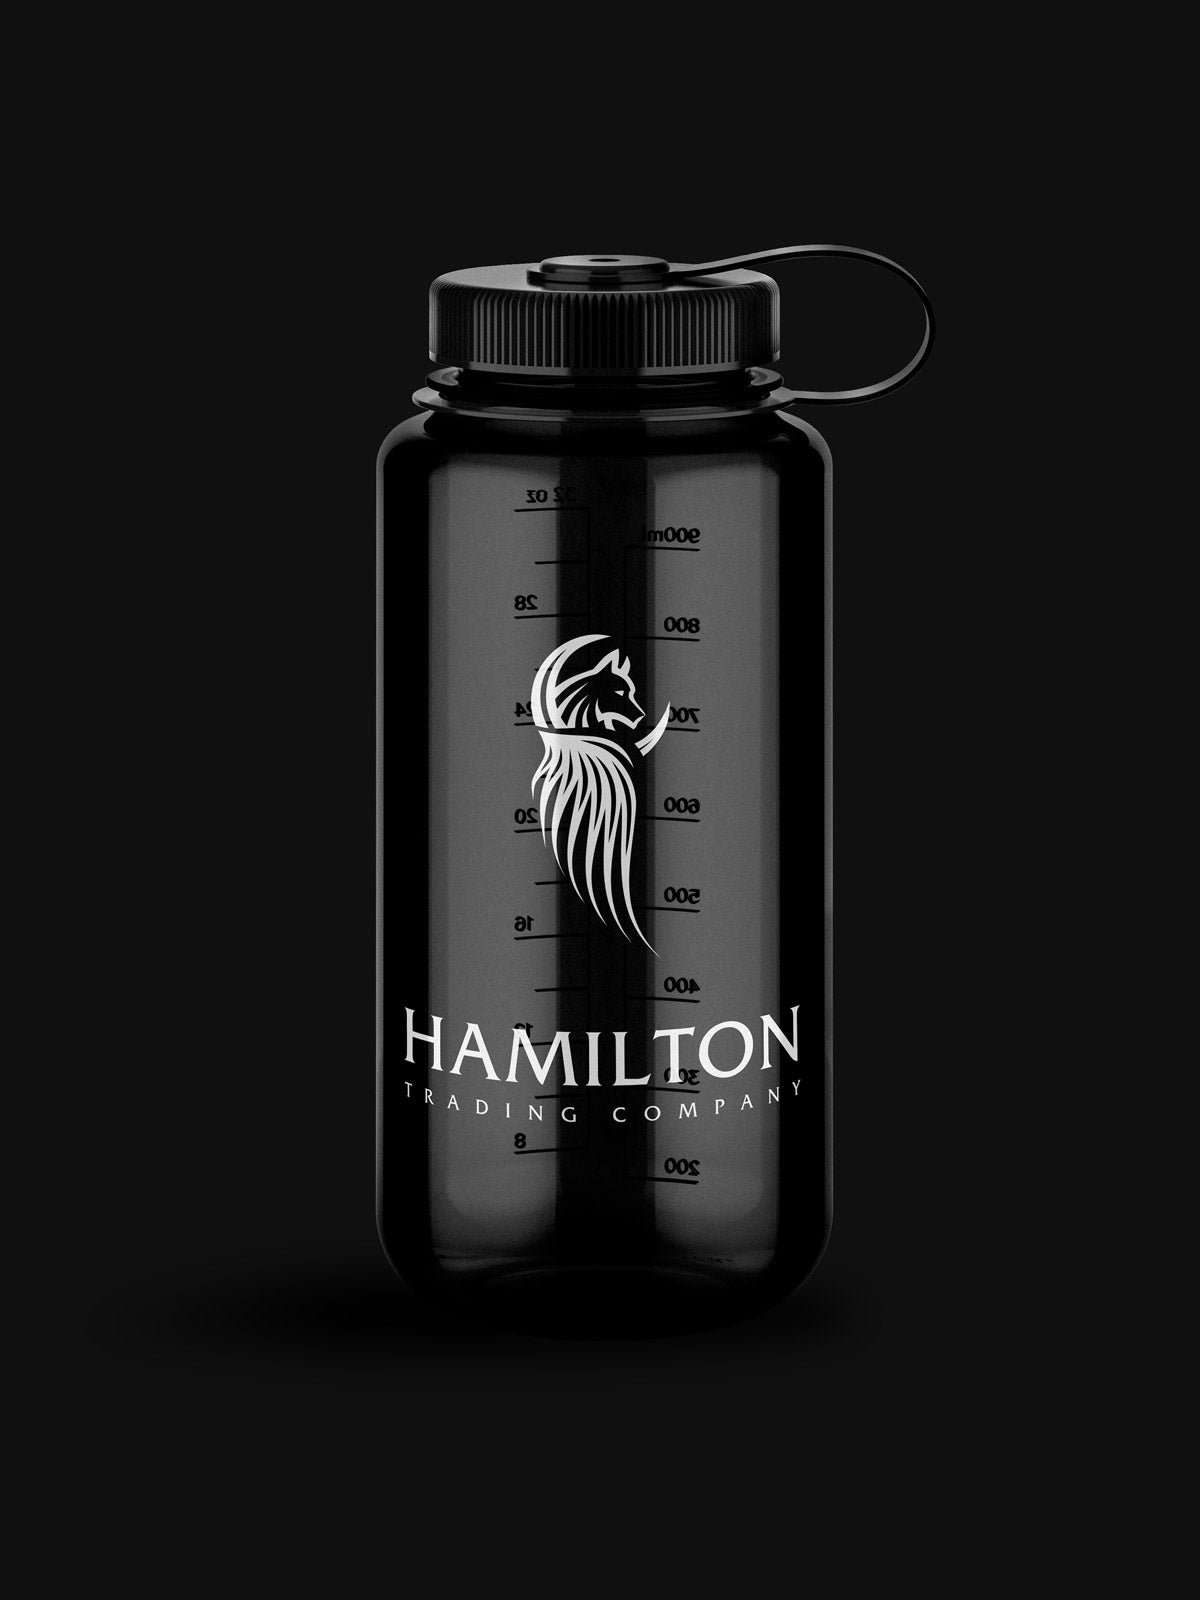 Hamilton Water Bottle